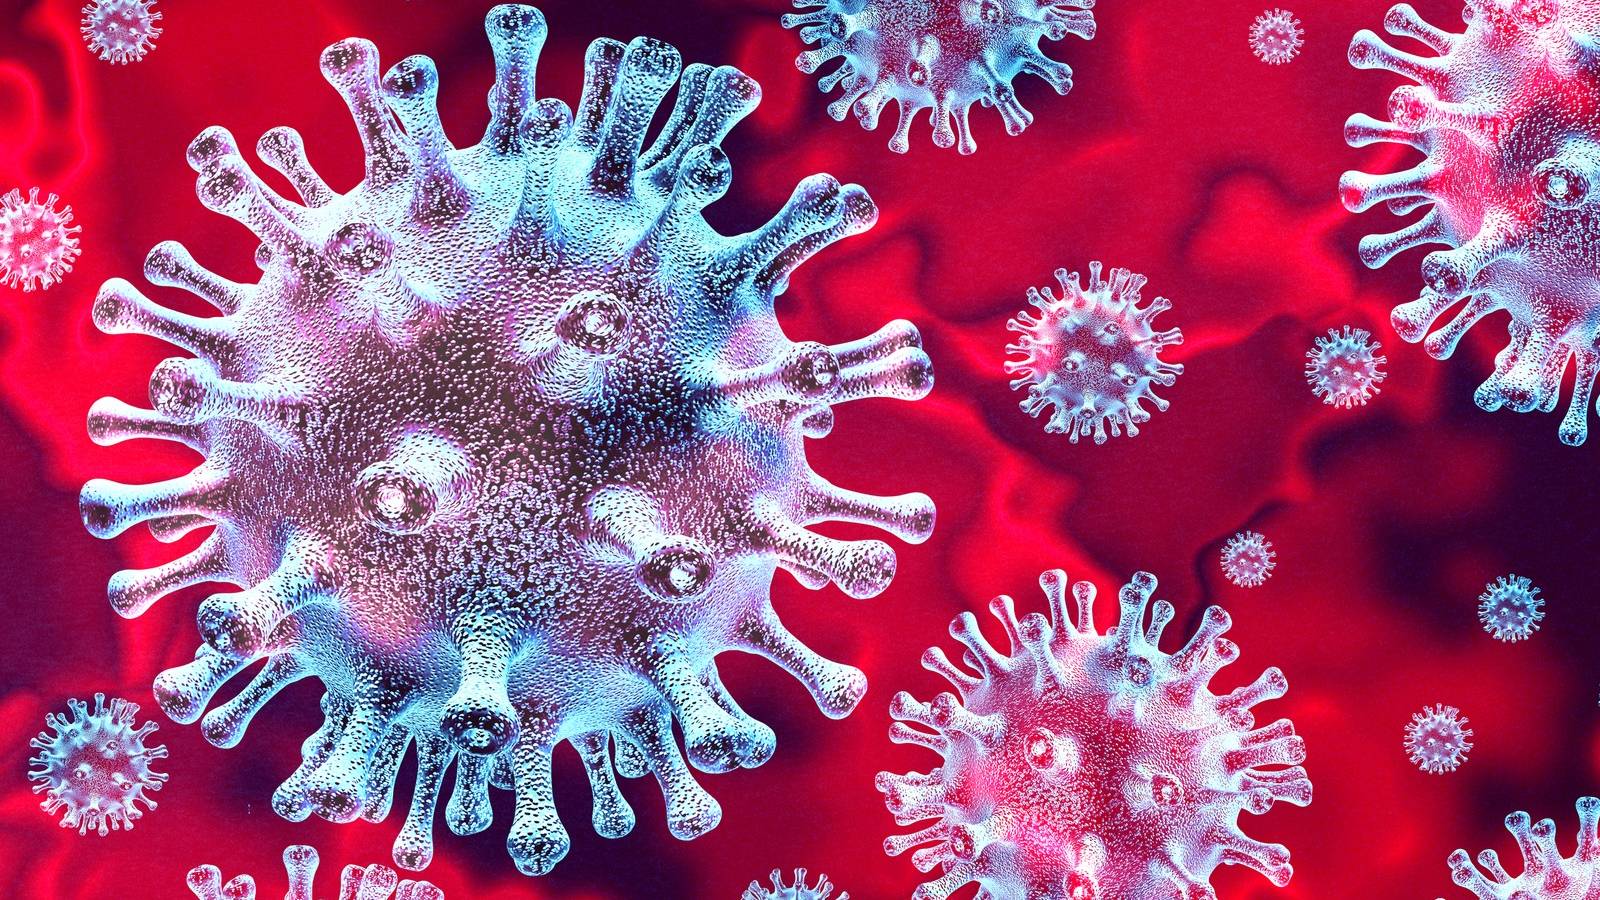 Coronavirus Romania cazuri deces 22 martie